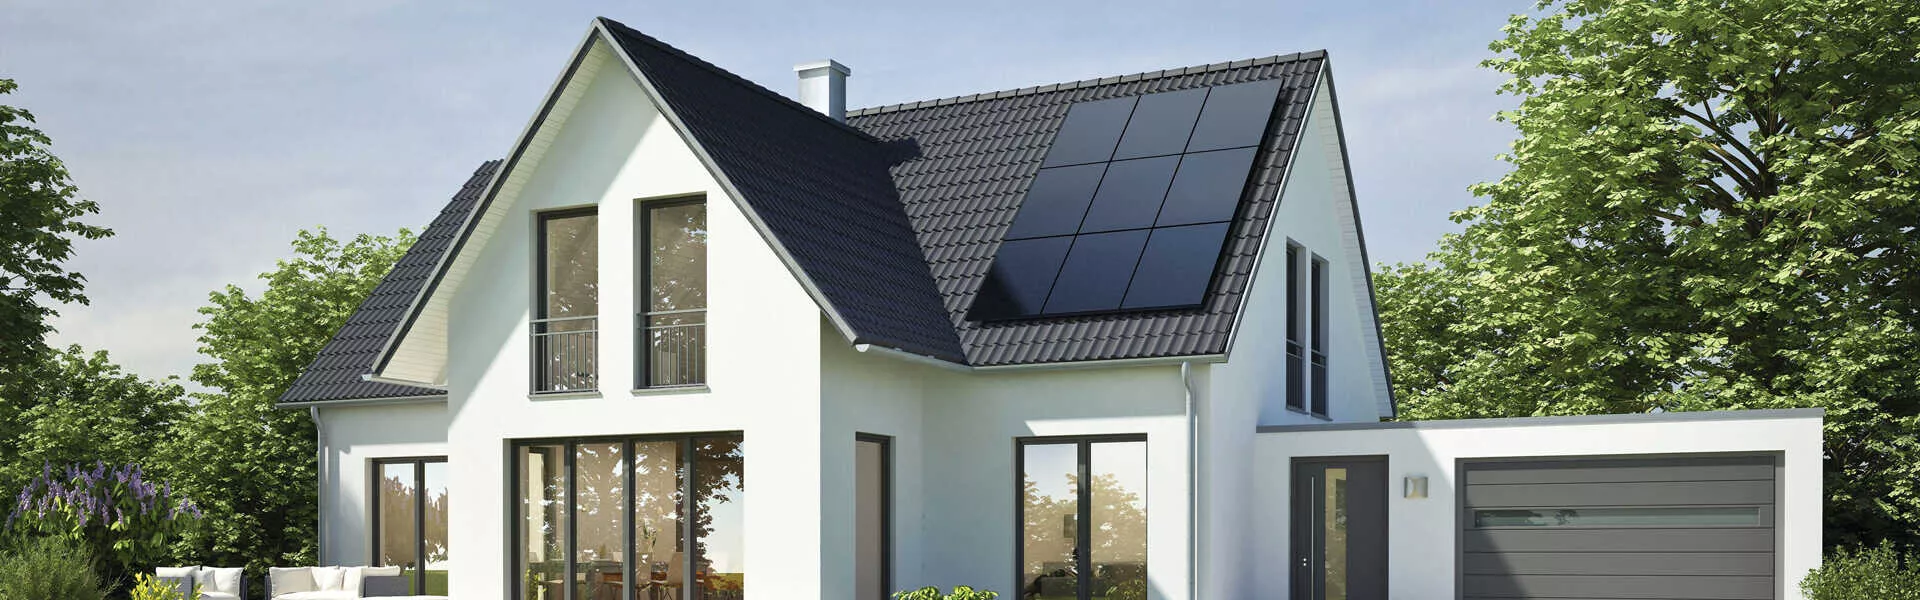 solar panels on house in Nederland